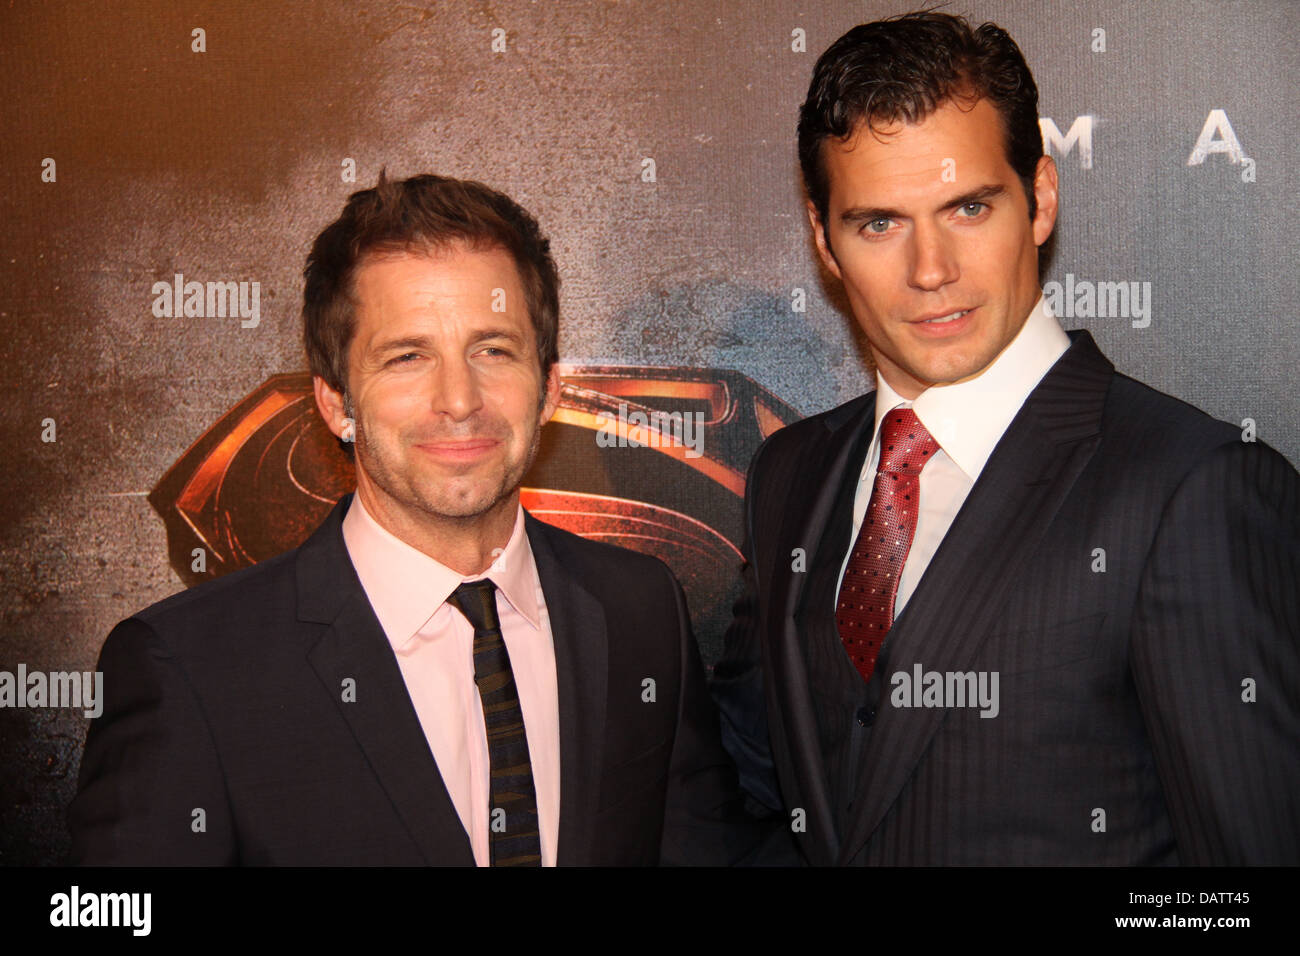 Zack Snyder on X: Henry Cavill is Superman. #HenryCavillSuperman   / X